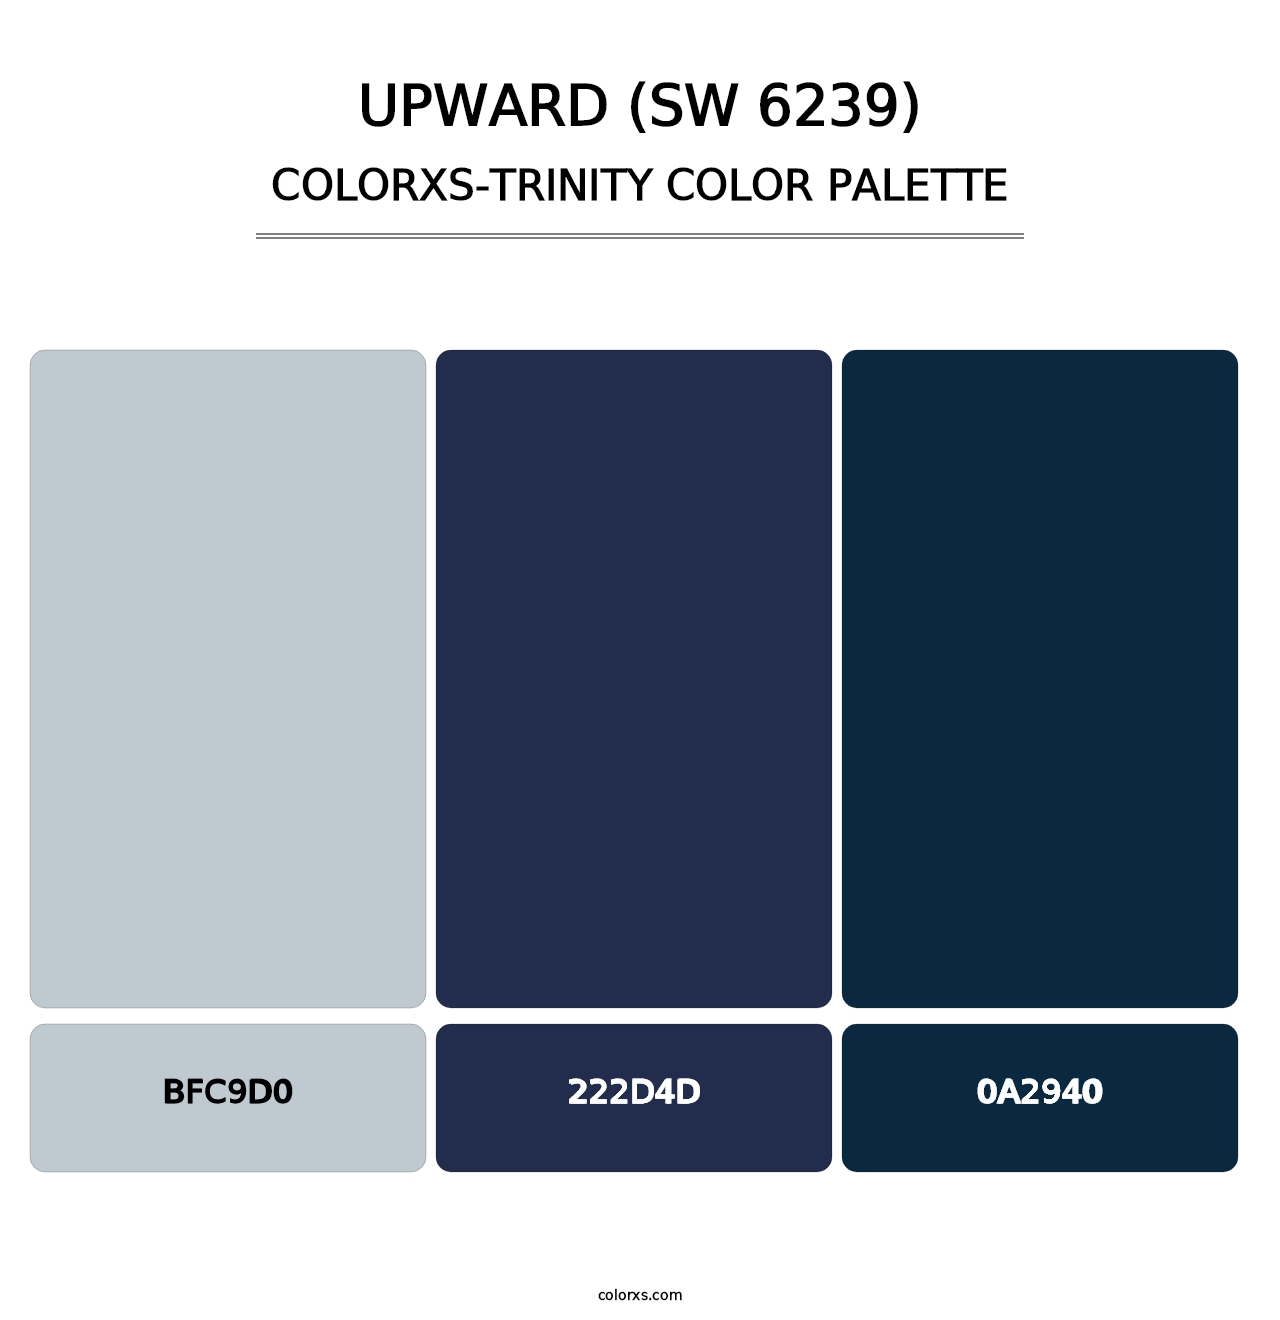 Upward (SW 6239) - Colorxs Trinity Palette